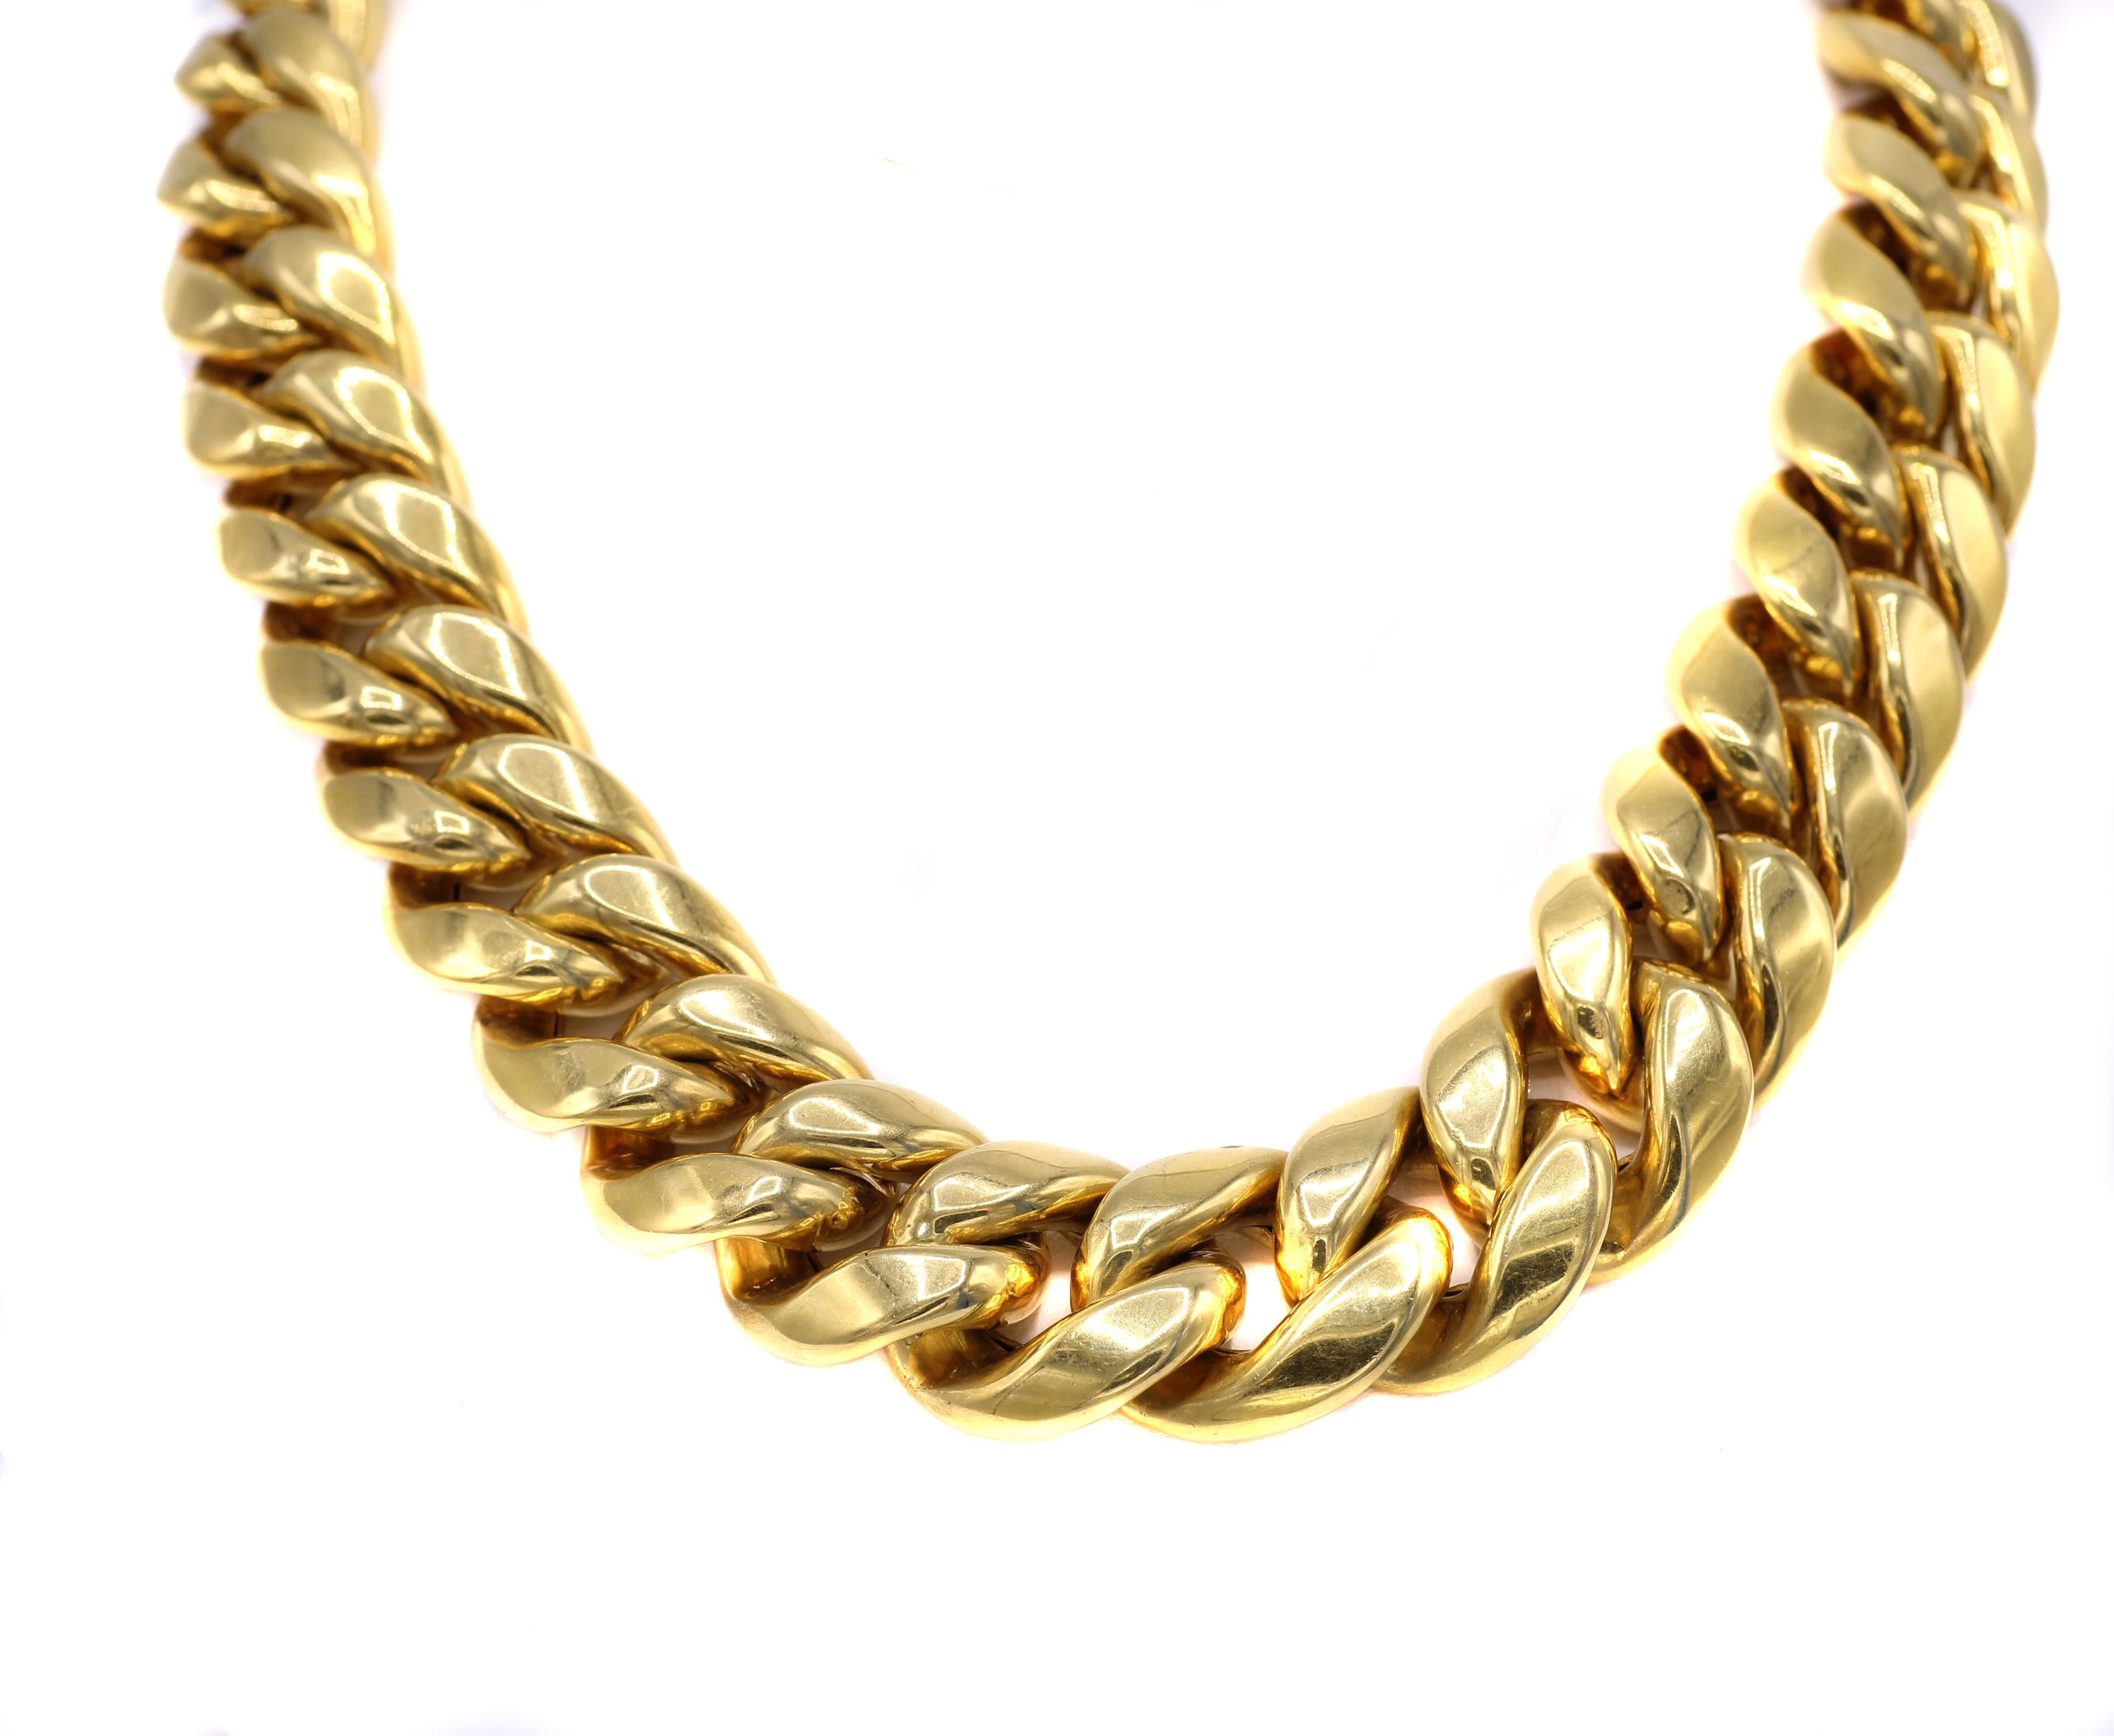 Modische schicke italienische 1980er Jahre 18 Karat Gelbgold Kandare Link Choker Halskette mit einer minimalen Abstufung der Breite von 0,75 Zoll in der Mitte bis 0,6 Zoll an den Enden. Durch die hohlen Goldglieder liegt die Kette nicht zu schwer am